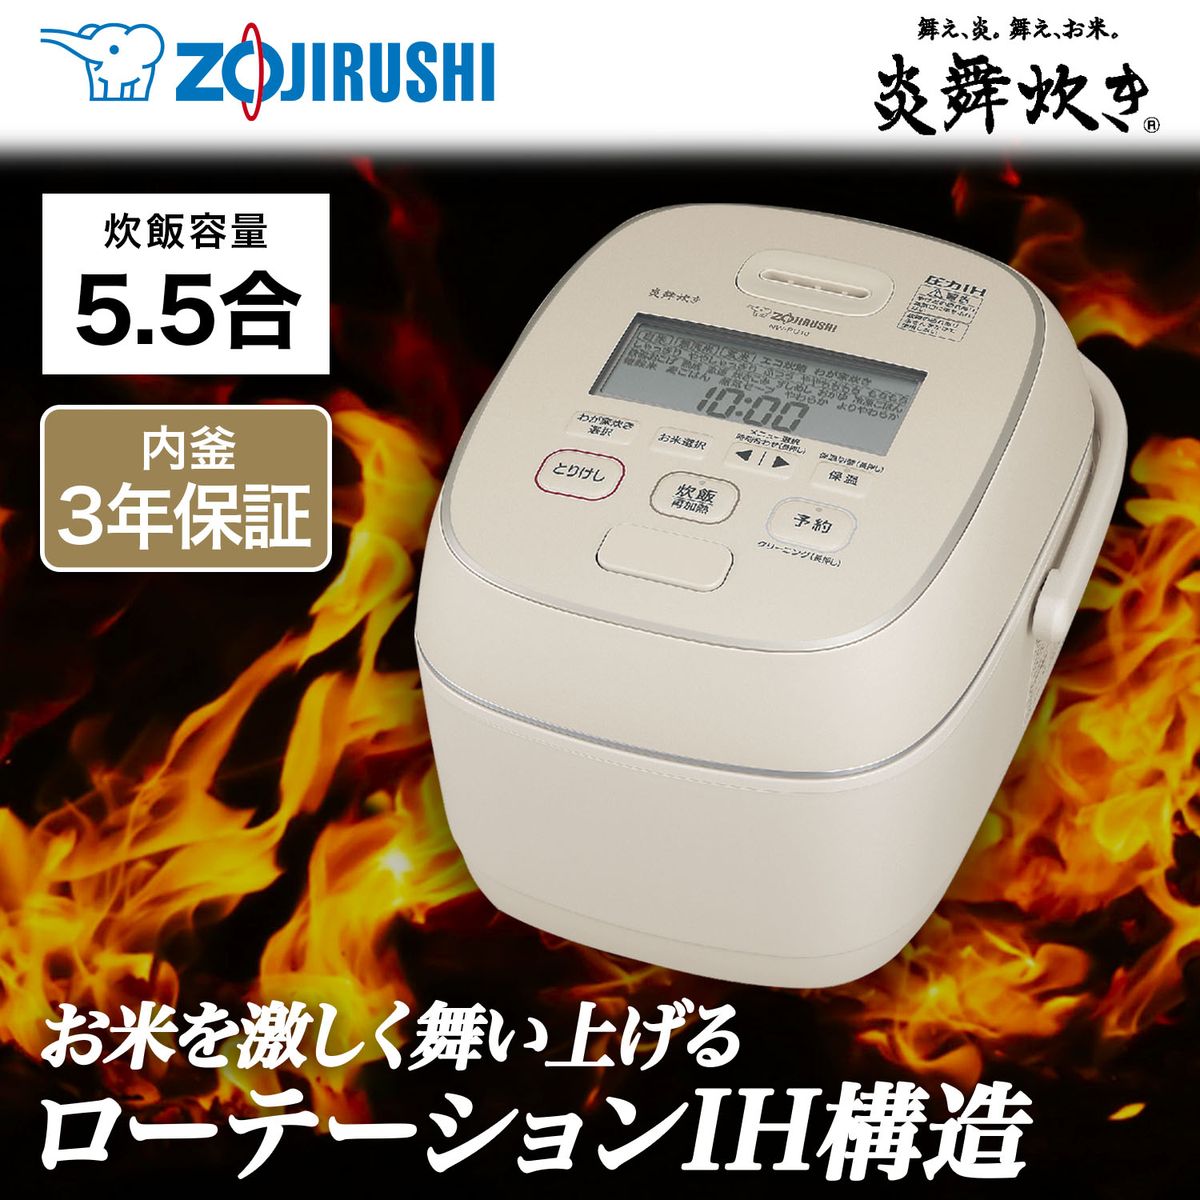 [22年度モデル 在庫限り]ZOJIRUSHI 圧力IH炊飯器 炎舞炊き 5.5合炊き グレージュ